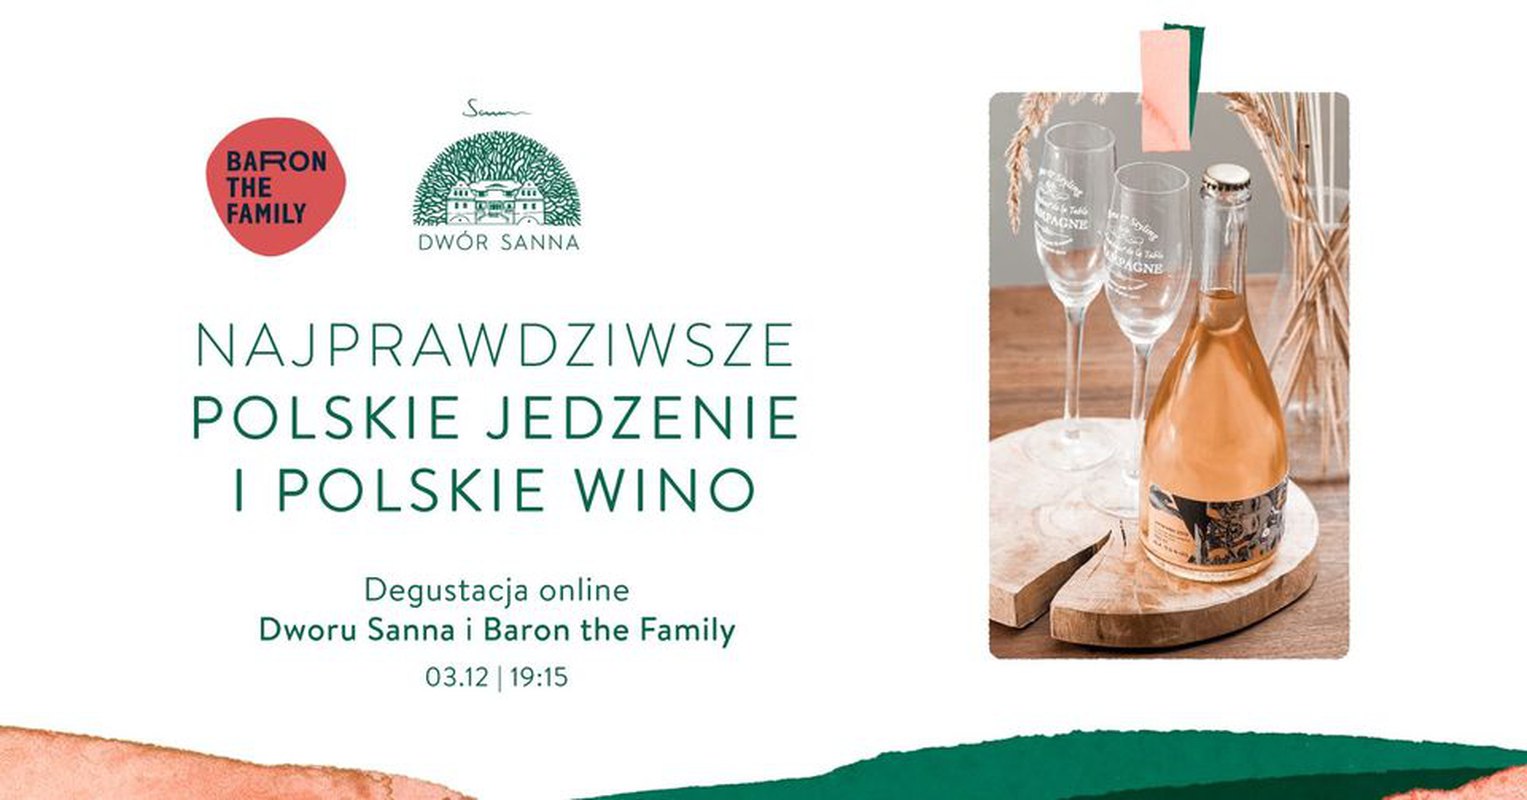 Najprawdziwsze polskie jedzenie i polskie wino. Degustacja online Dworu Sanna i Baron the Family